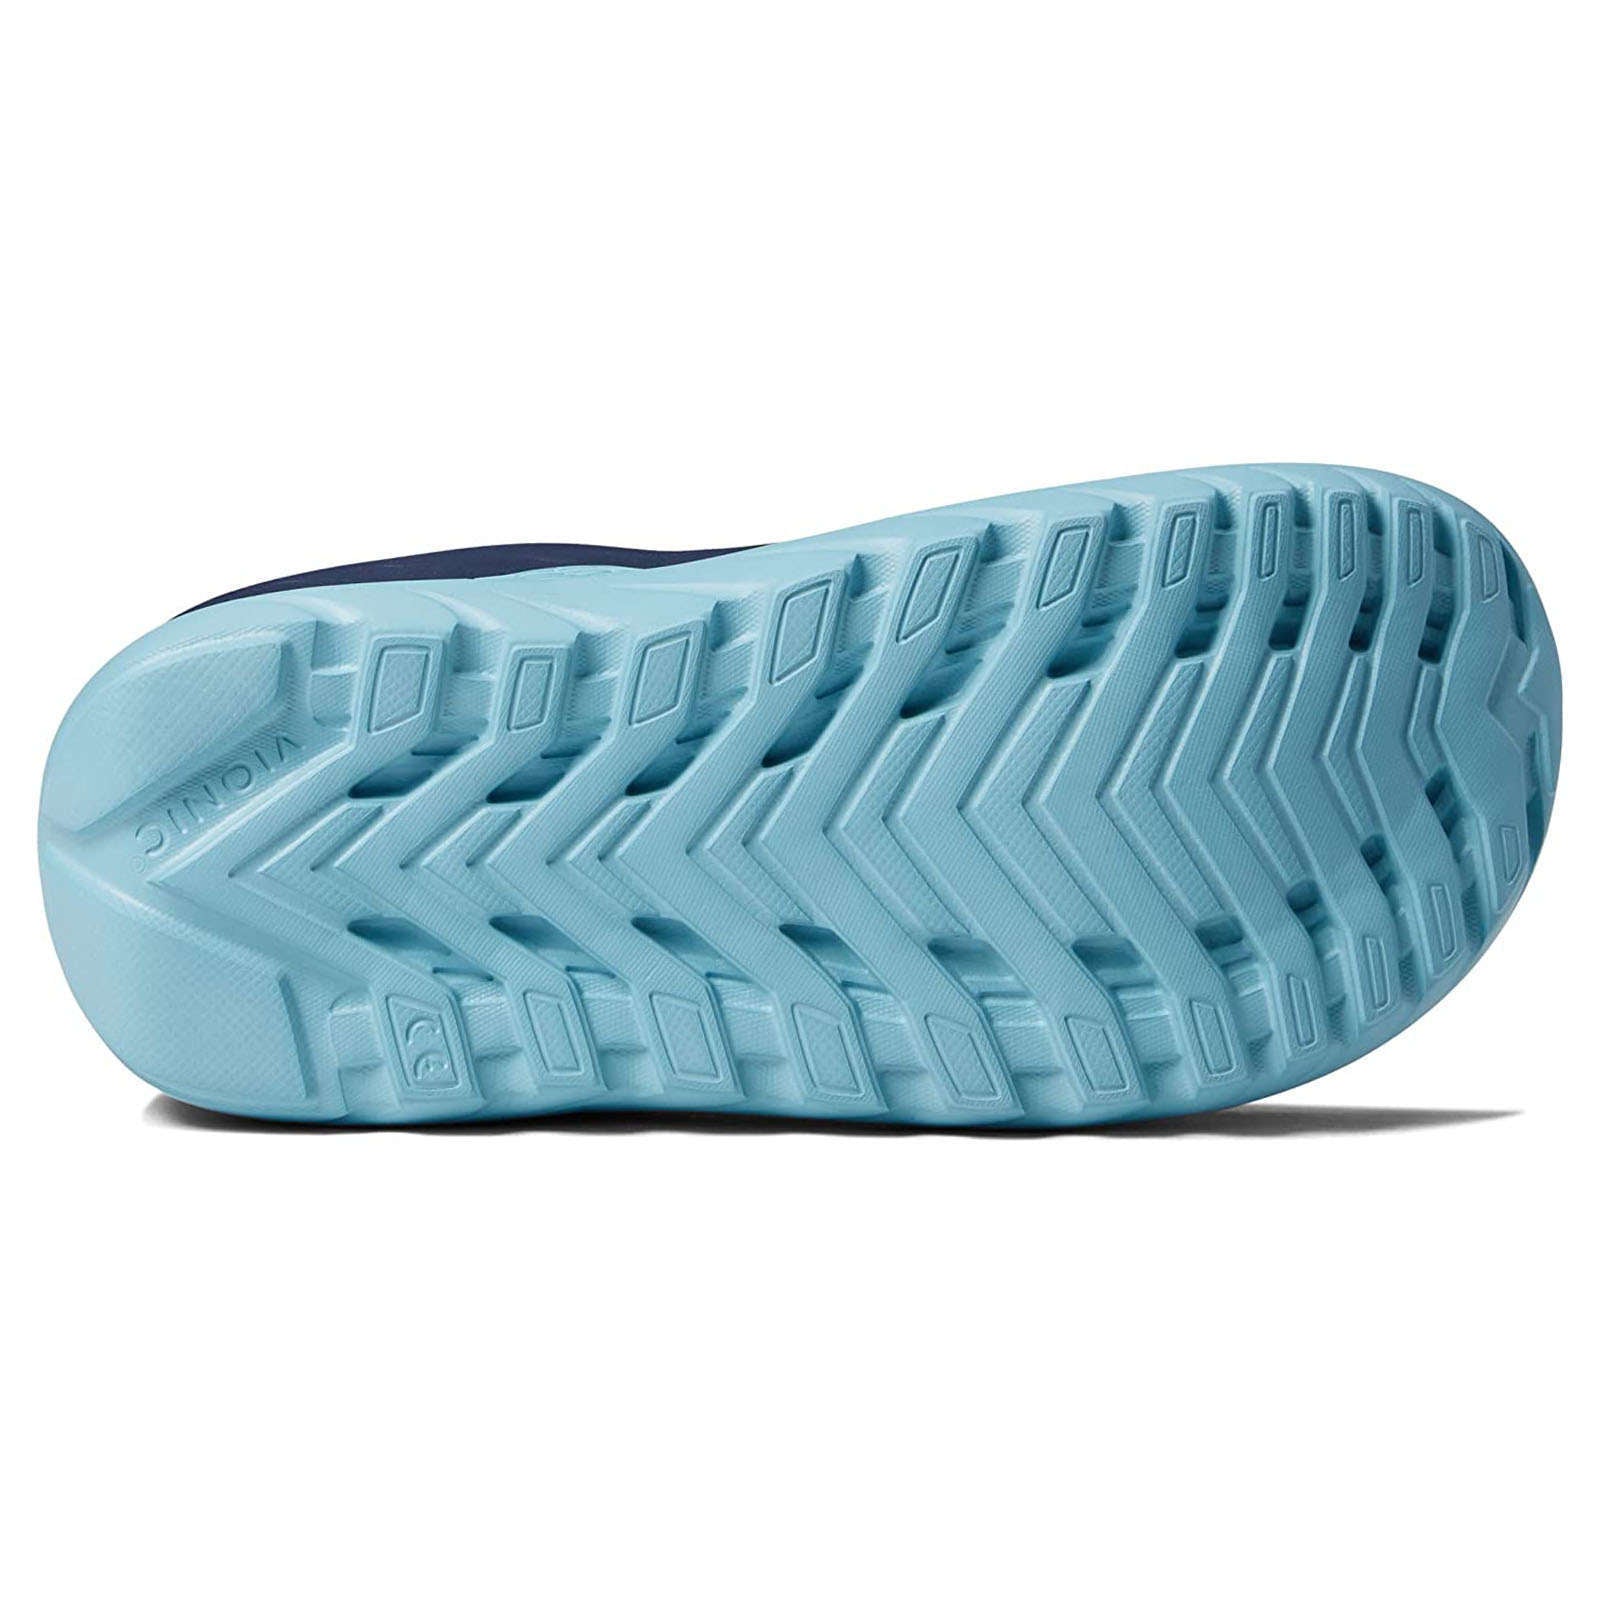 Vionic Restore Leather Unisex Sandals#color_navy porcelain blue